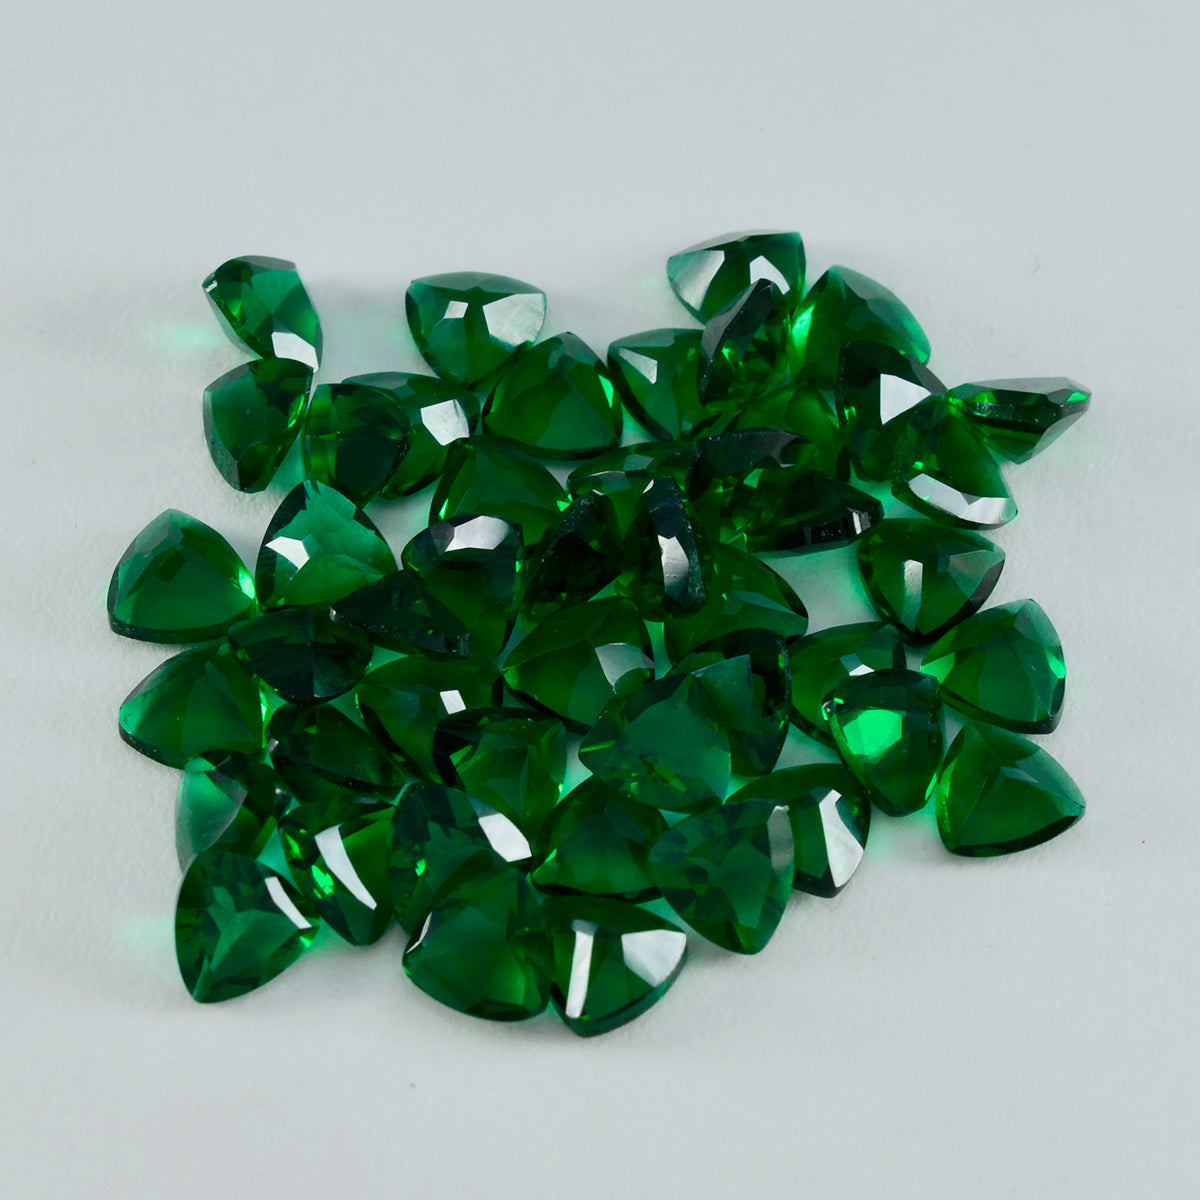 Riyogems, 1 pieza, Esmeralda verde CZ facetada, 8x8mm, forma de billón, gemas sueltas de calidad increíble